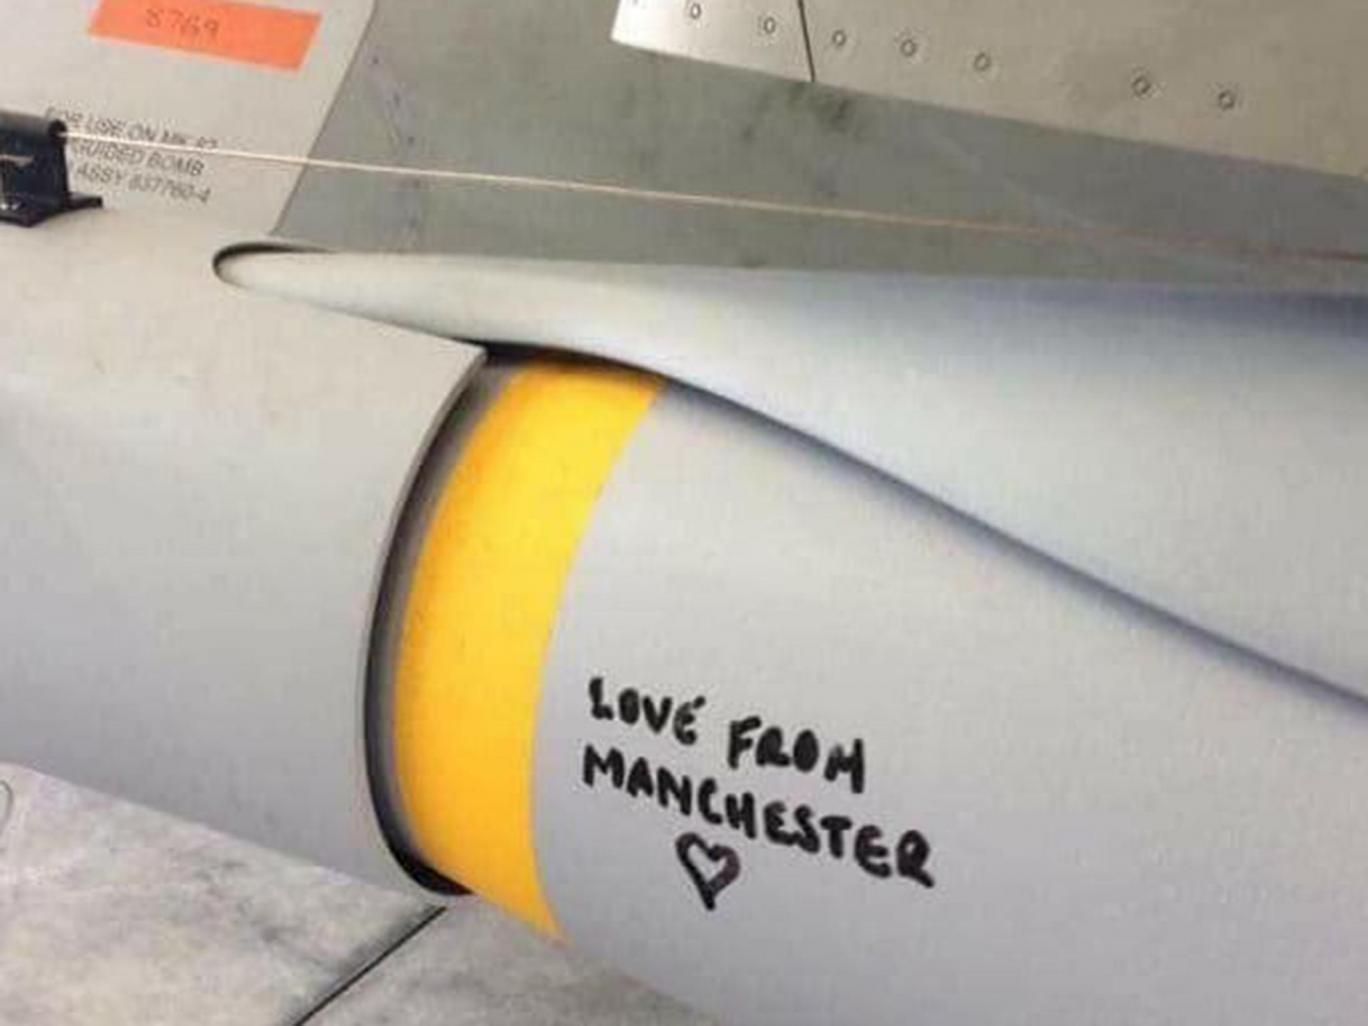 Британия бомбит ISIS ракетами “с любовью из Манчестера”